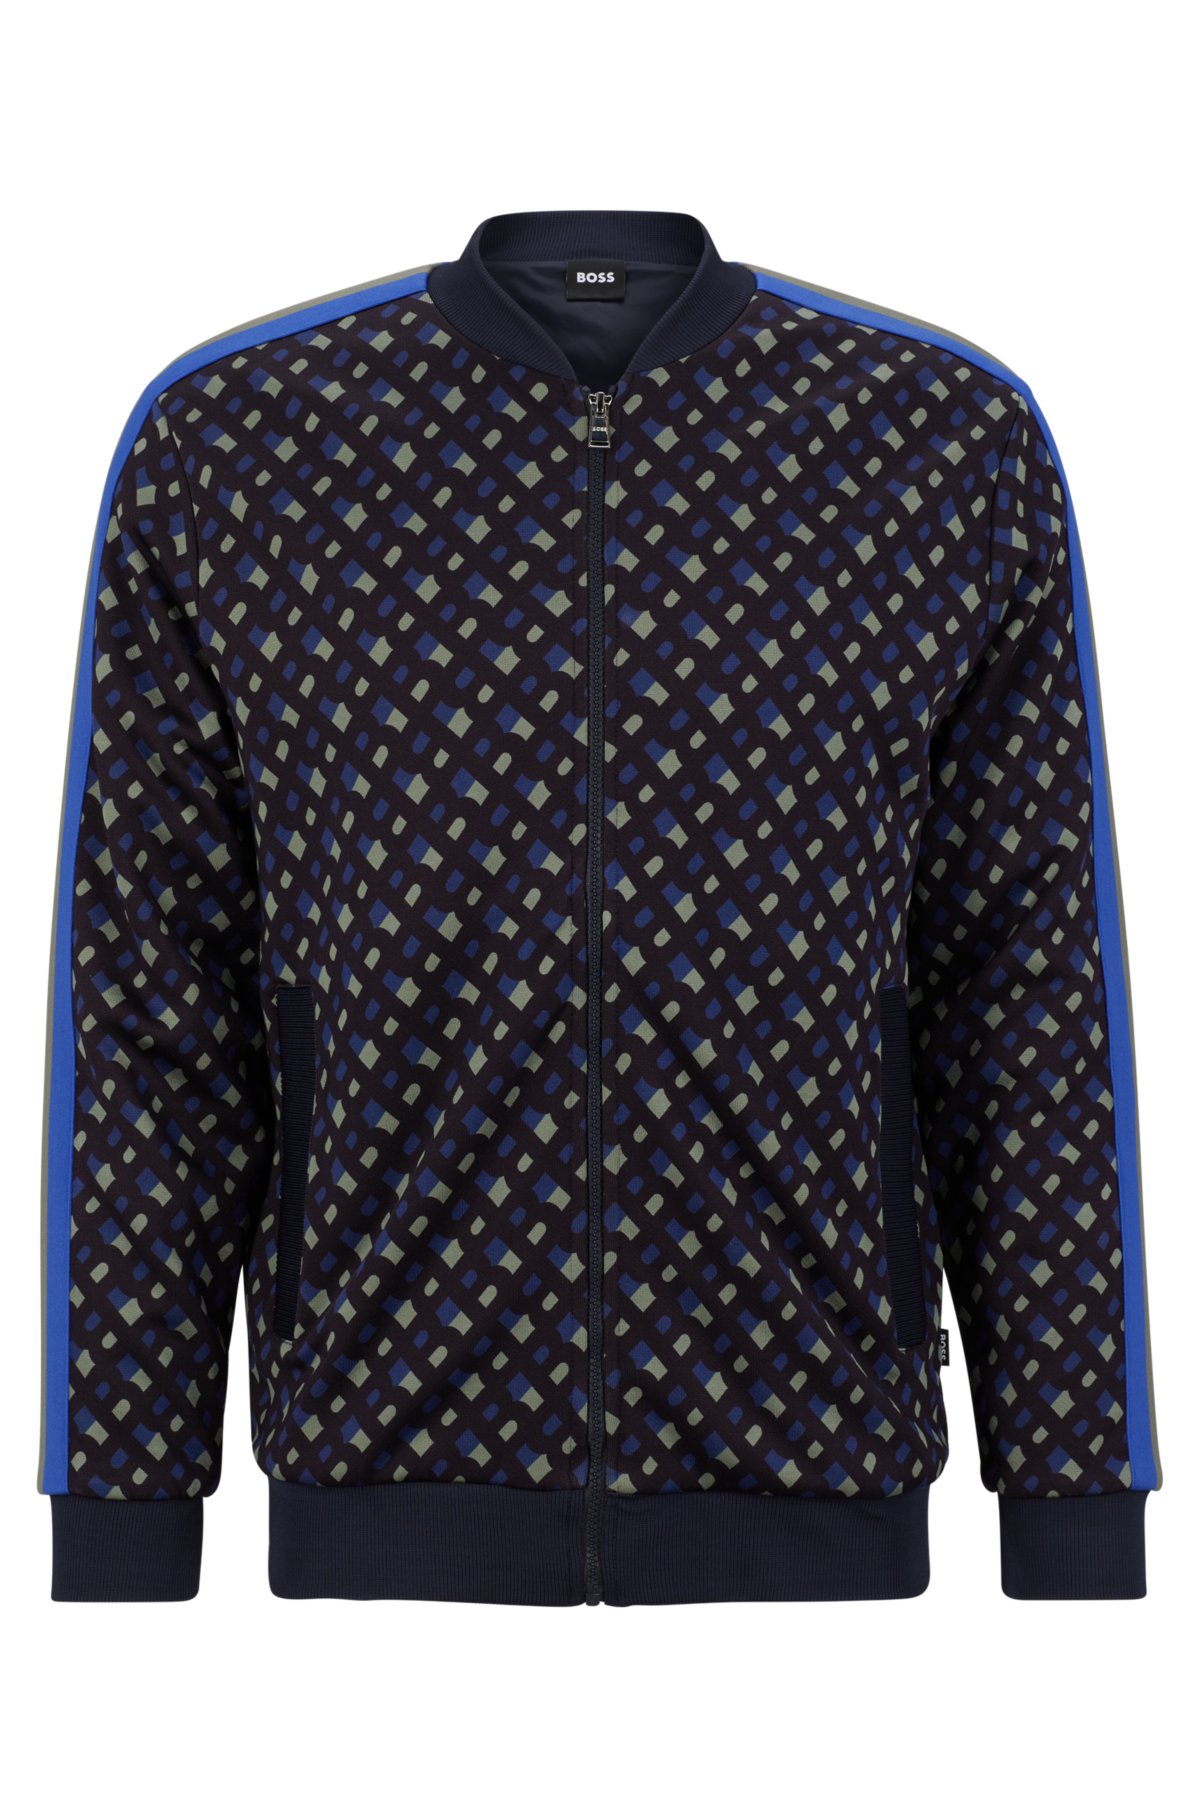 Las mejores ofertas en Camisas para hombres Louis Vuitton